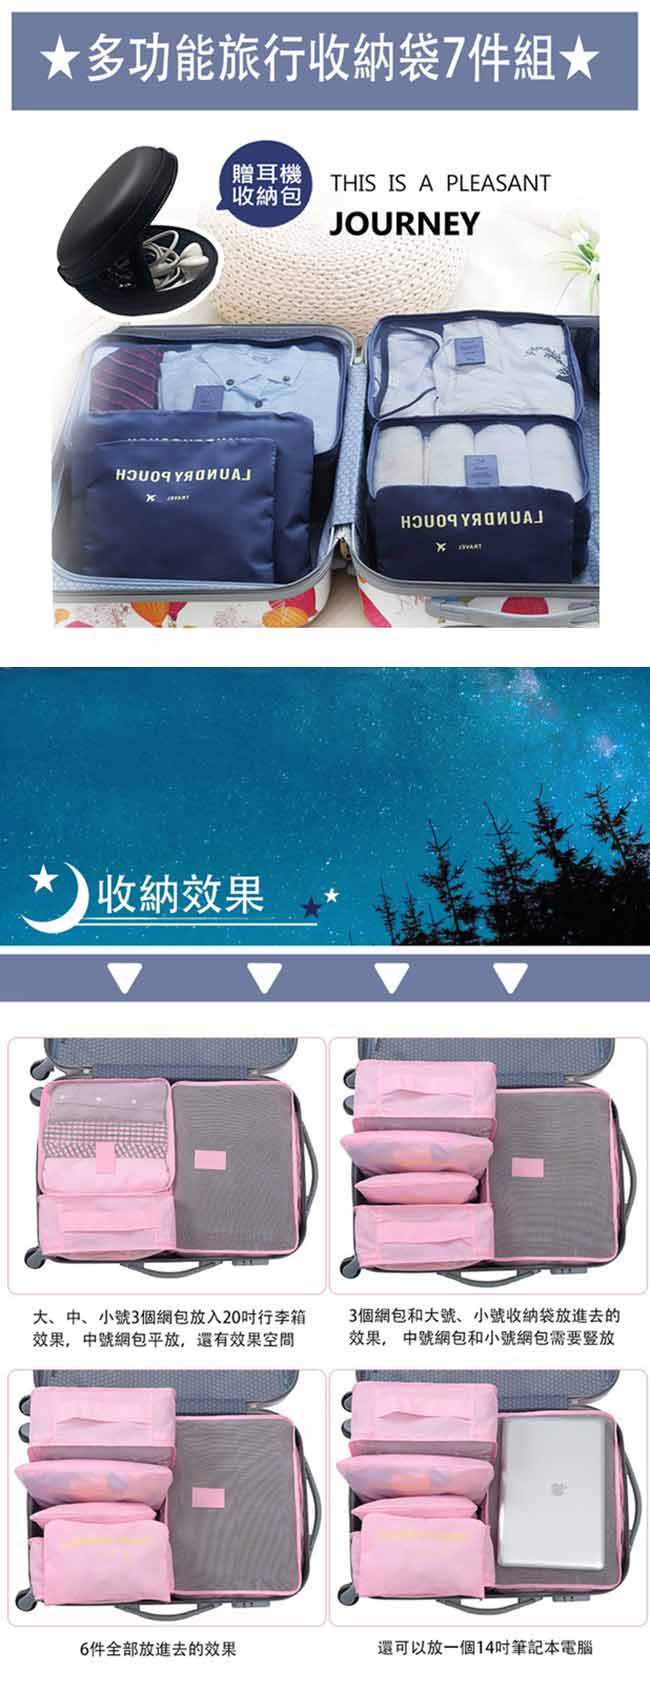 日創優品 超值韓版旅行收納袋6+1件組 (贈耳機包)